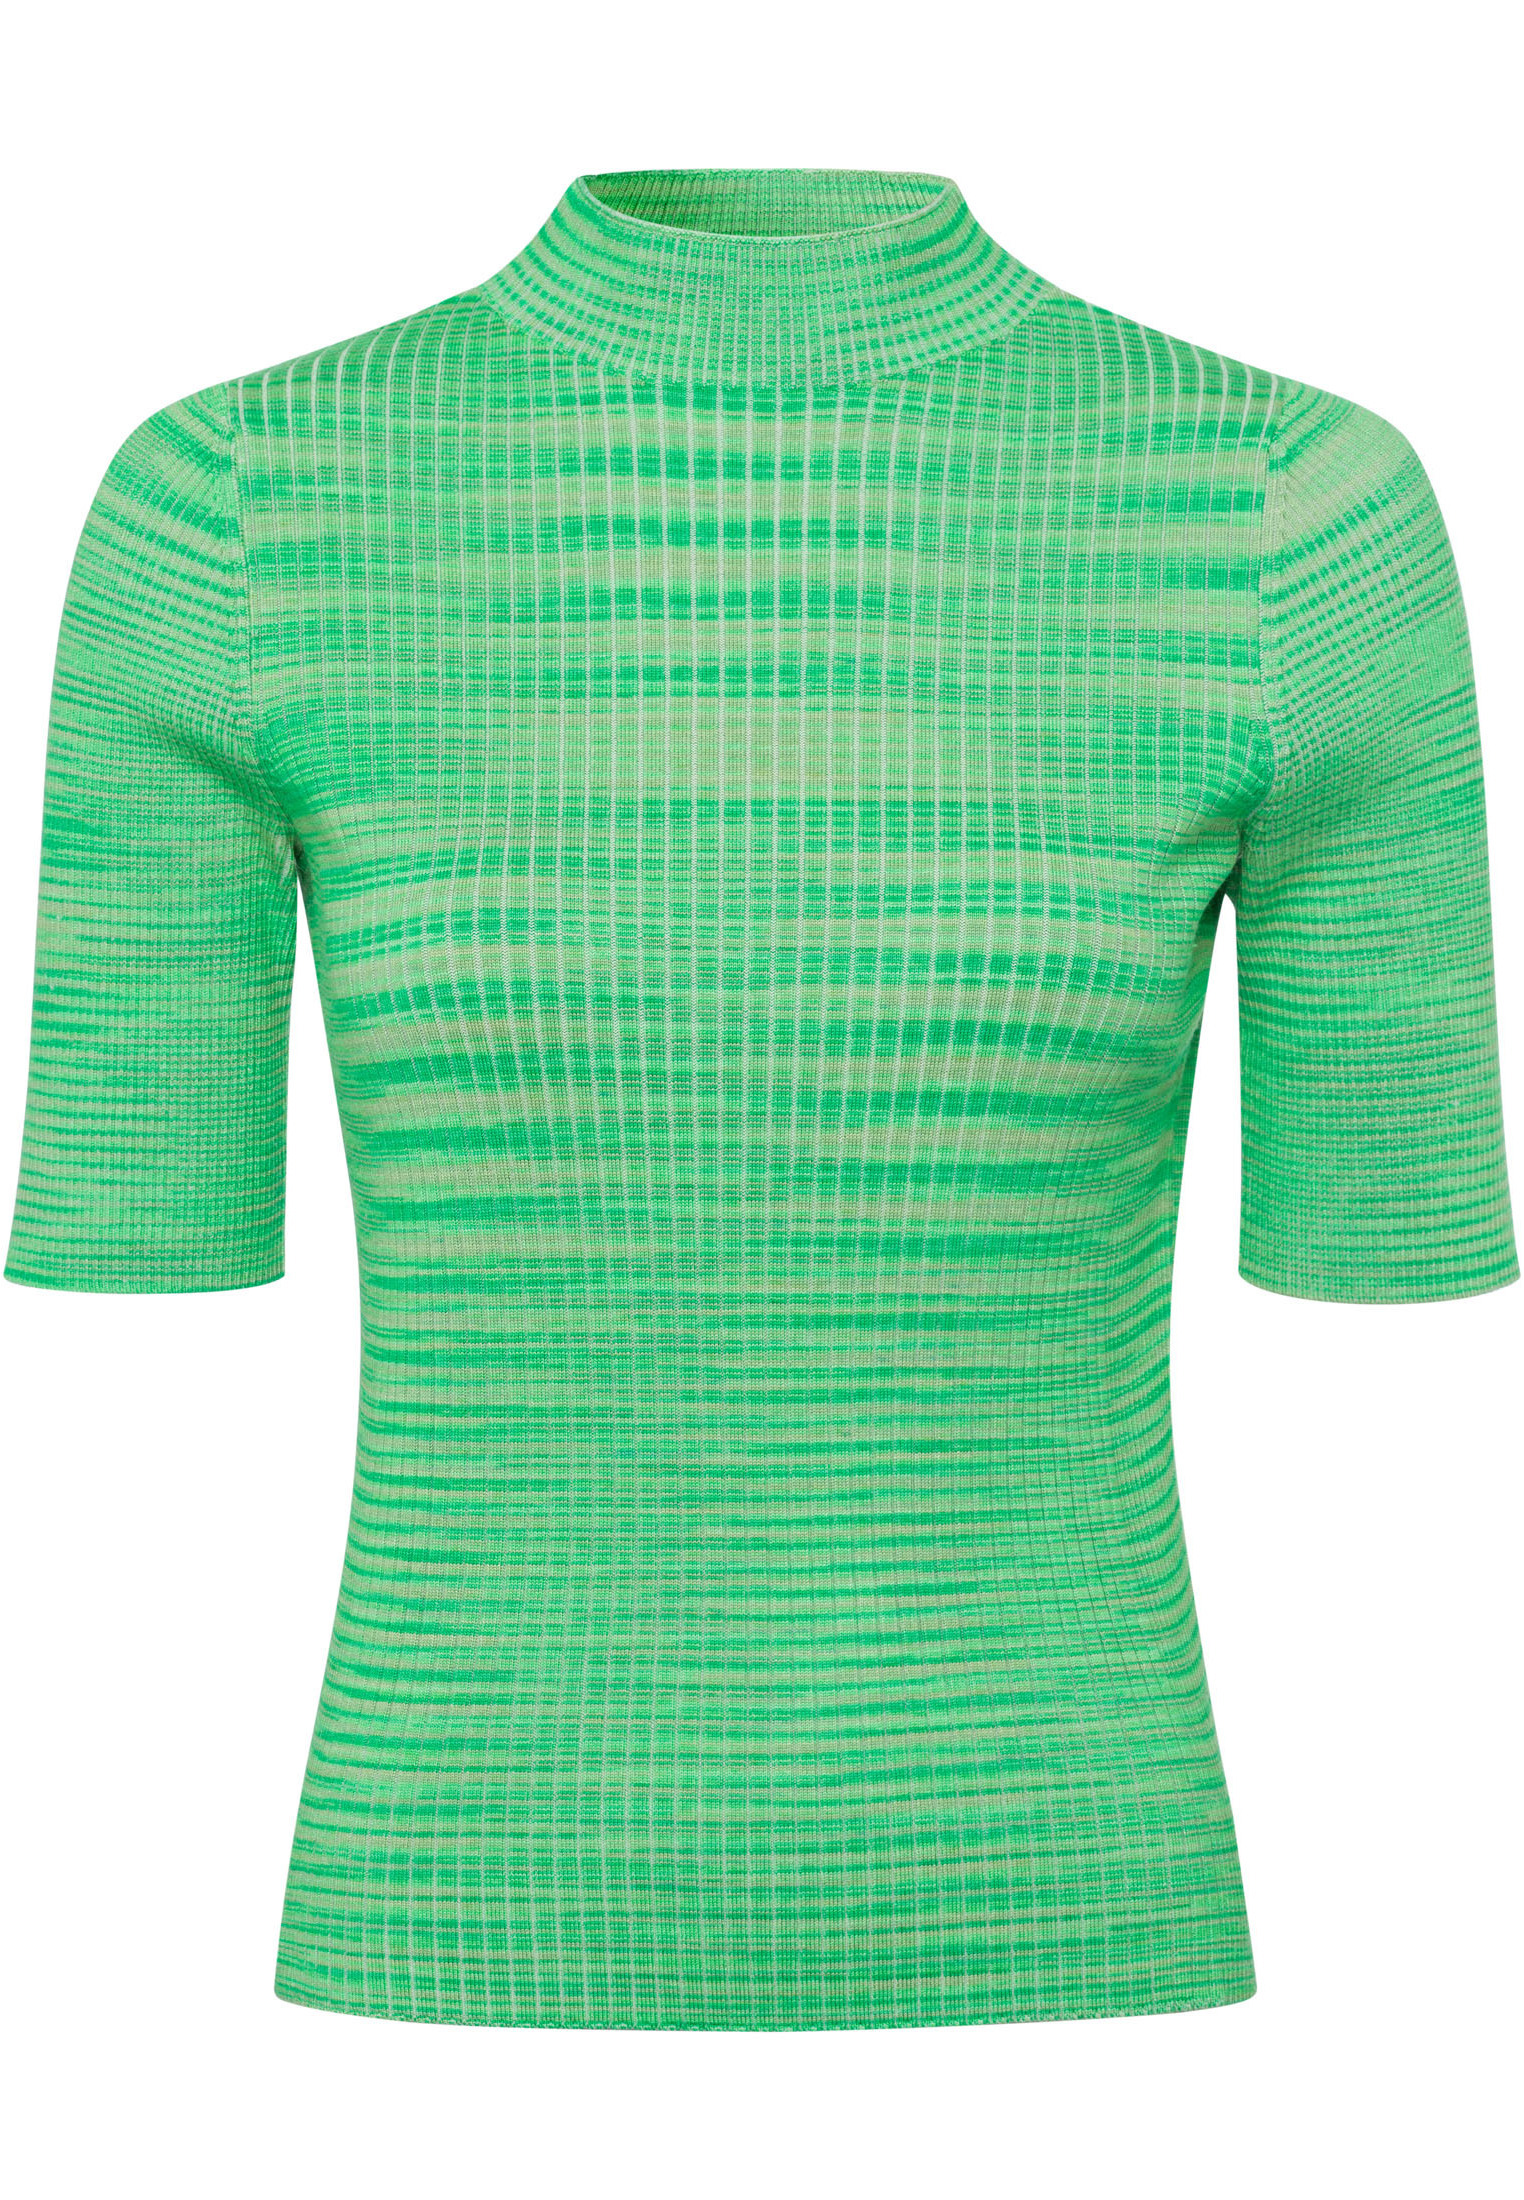 свитер zero mit punktstickerei цвет arabesque Свитер Zero mit Farbverlauf, цвет GreenGreen